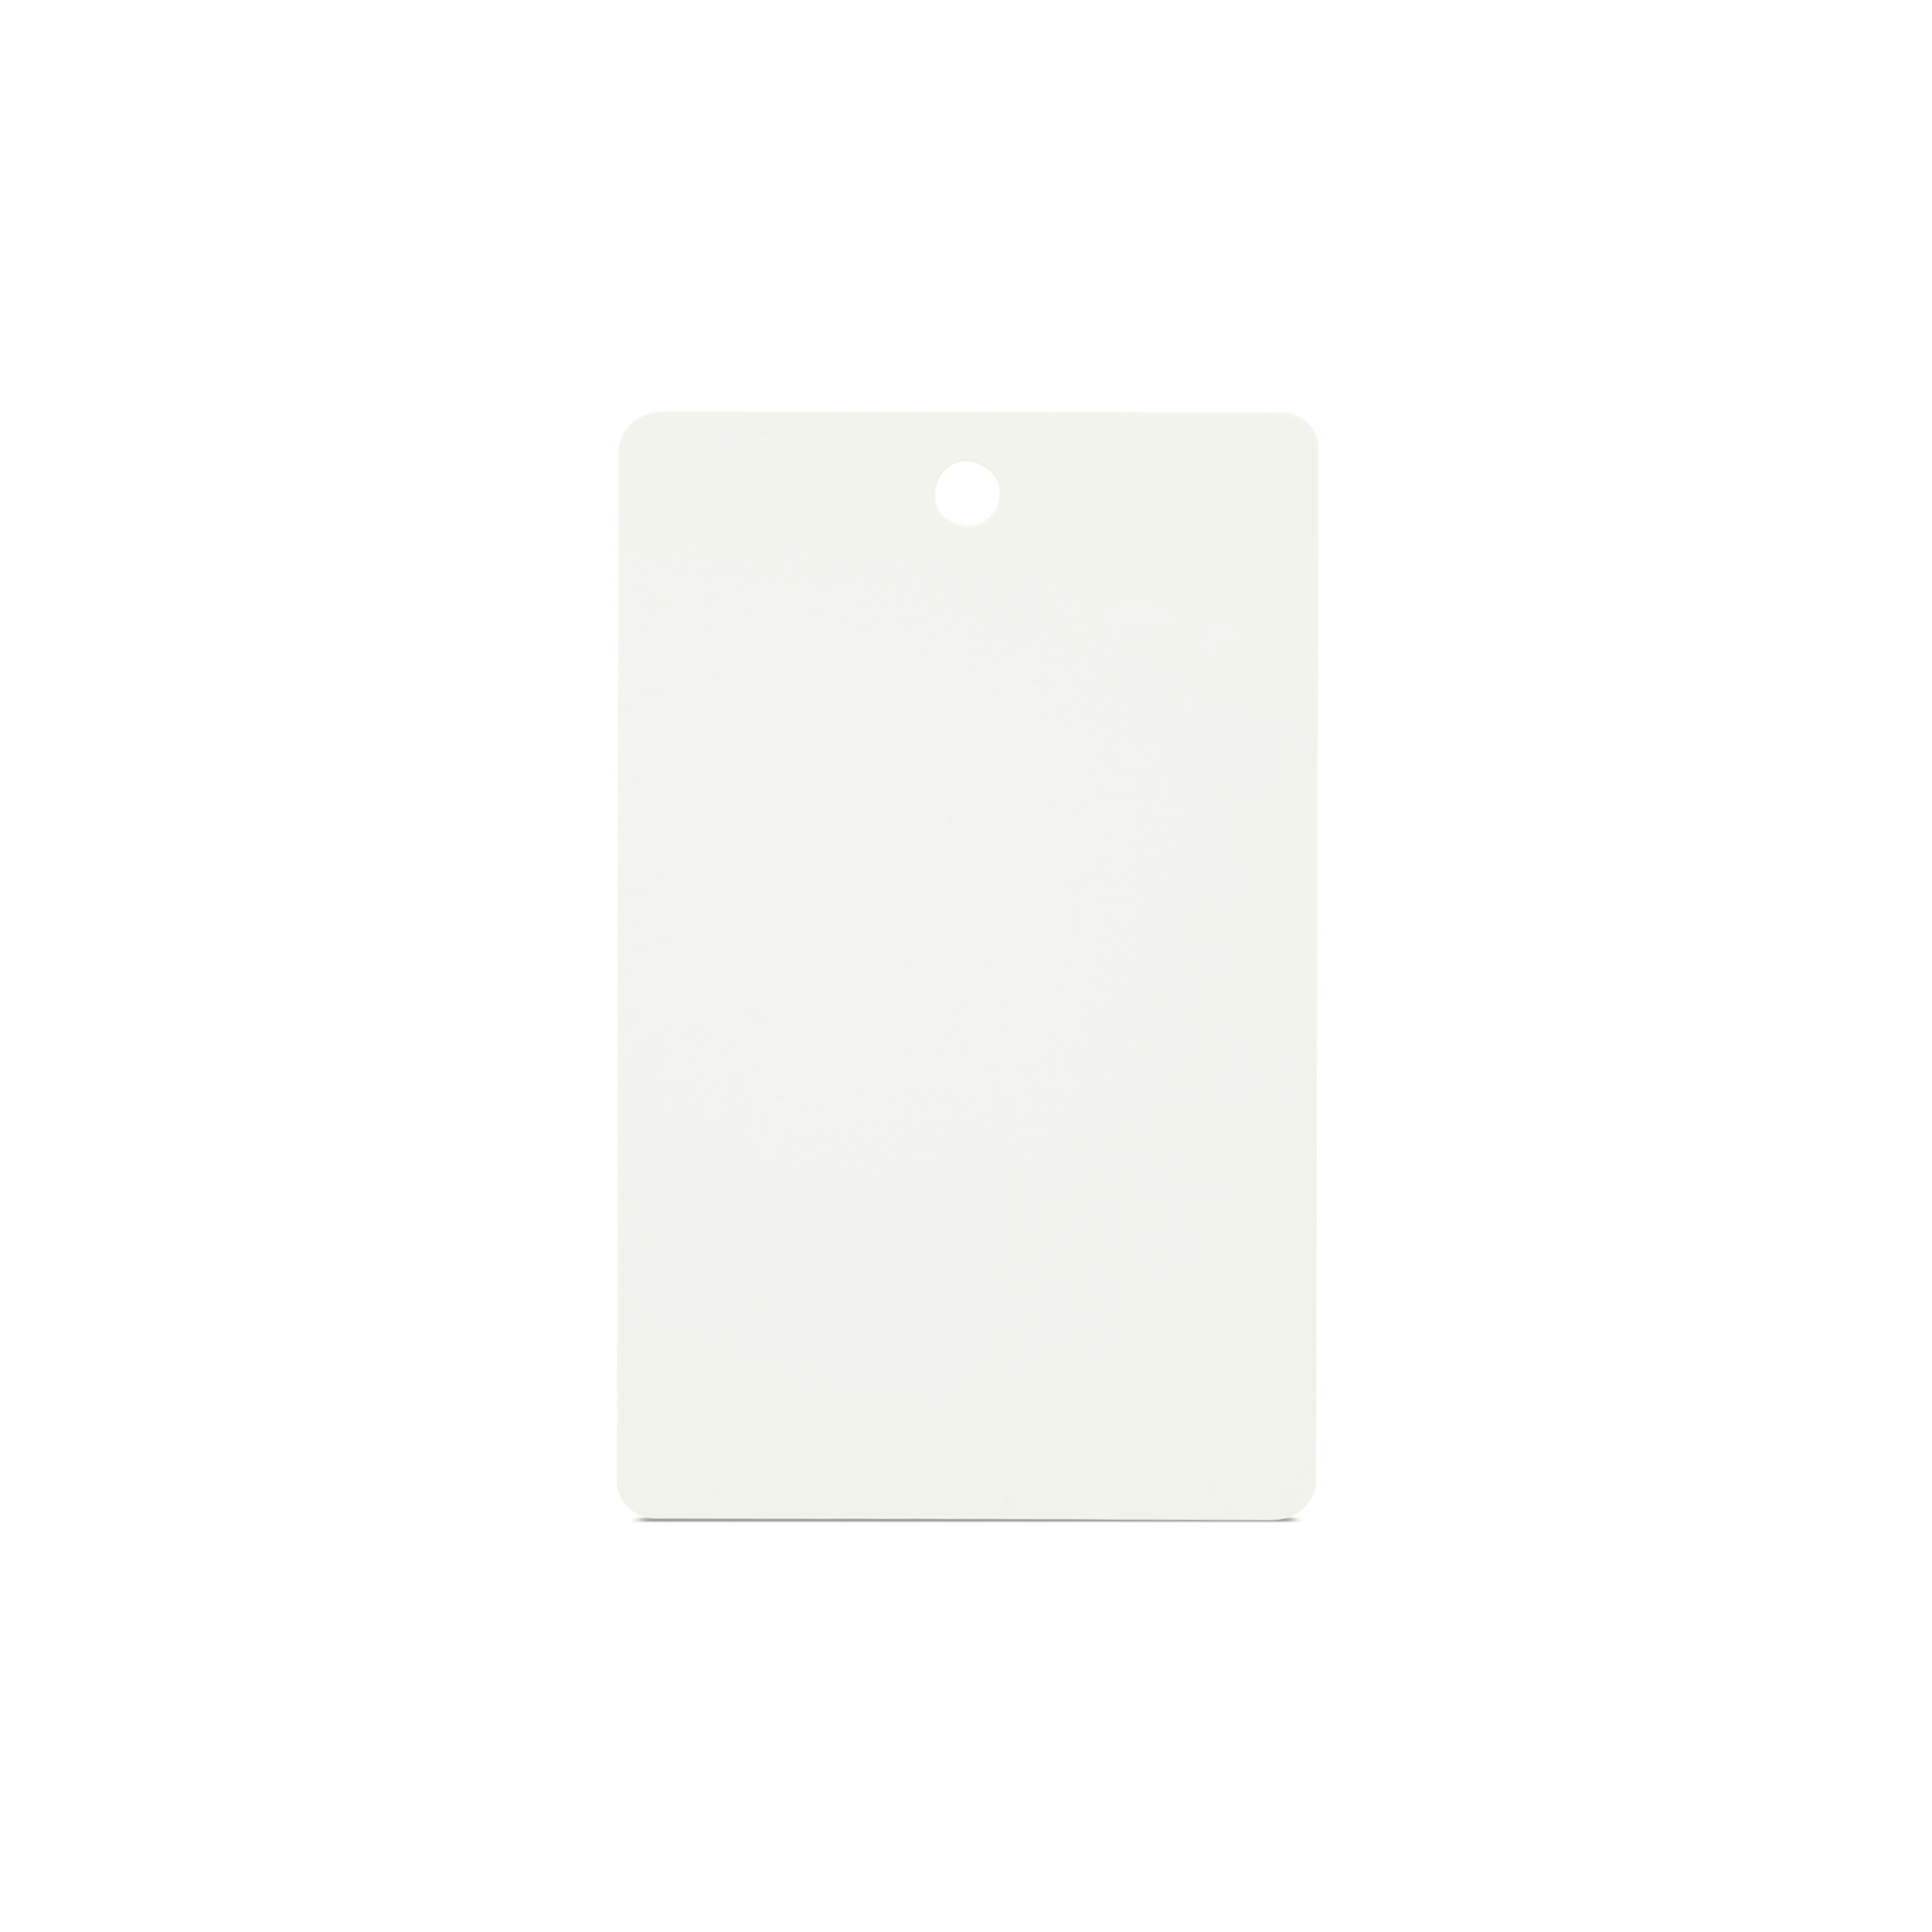 Vertikal stehende NFC Karte in weiß mit Lochung